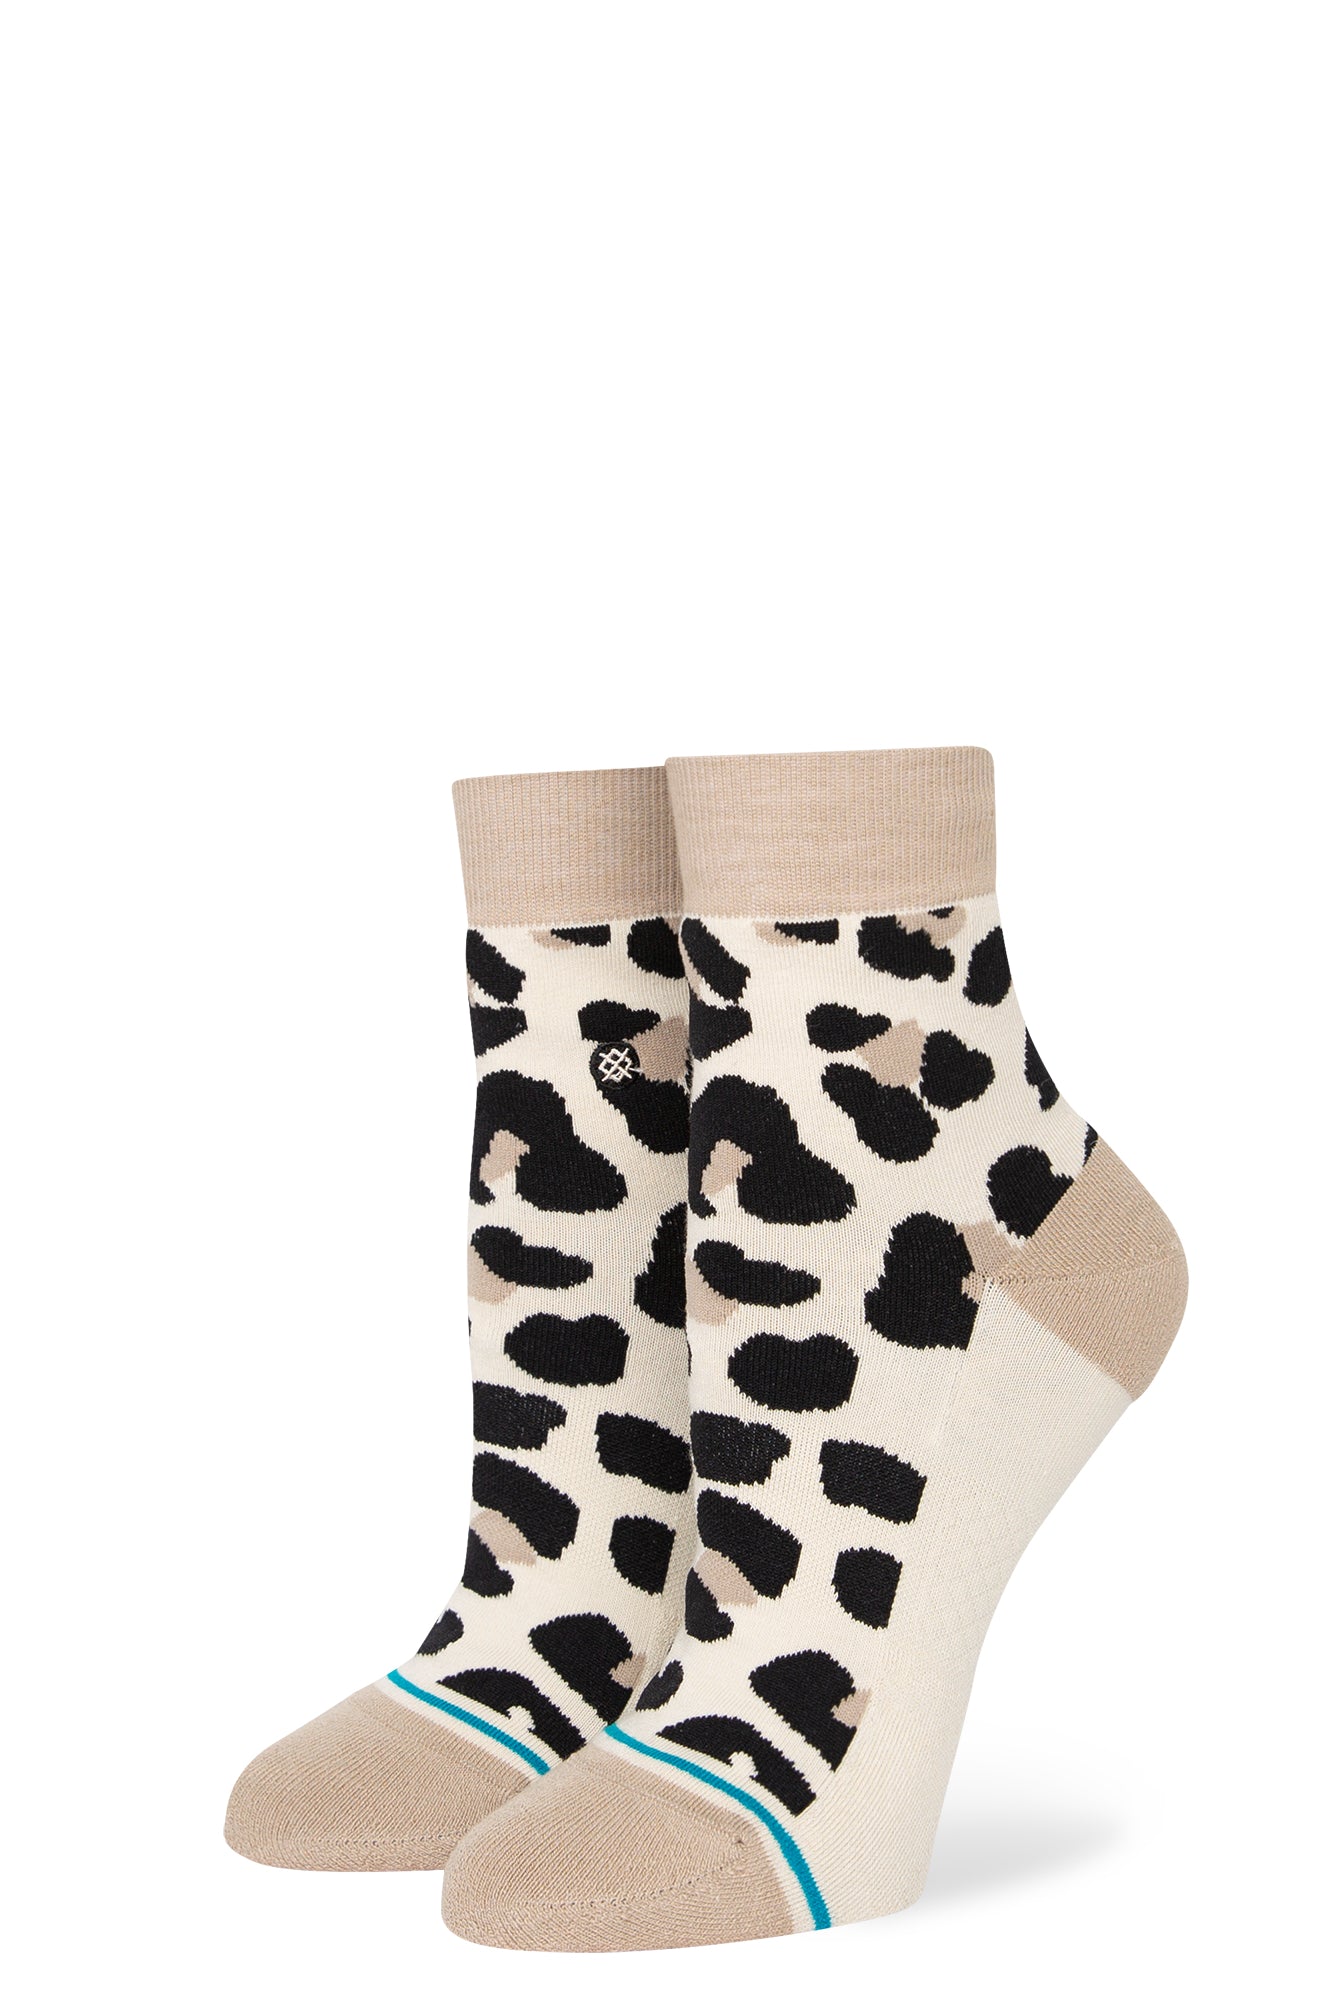 Stance Cotton Quarter Socks Small (Men 3-5.5 / Women 5-7.5) / Animalistic - Beige/Black Small (Men 3-5.5 / Women 5-7.5) Animalistic - Beige/Black Socks Stance- Tilden Co.